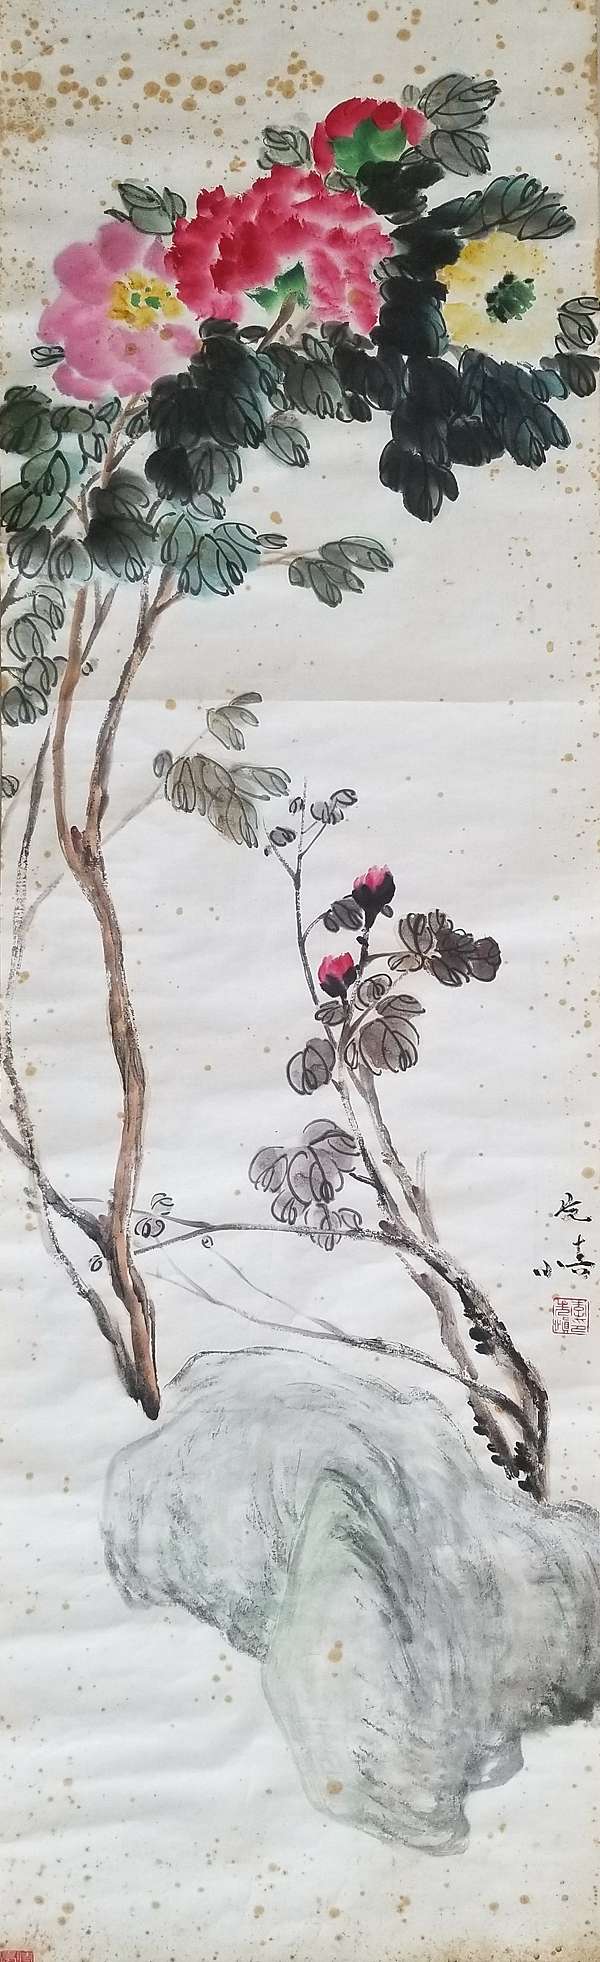 潘天壽 花卉圖